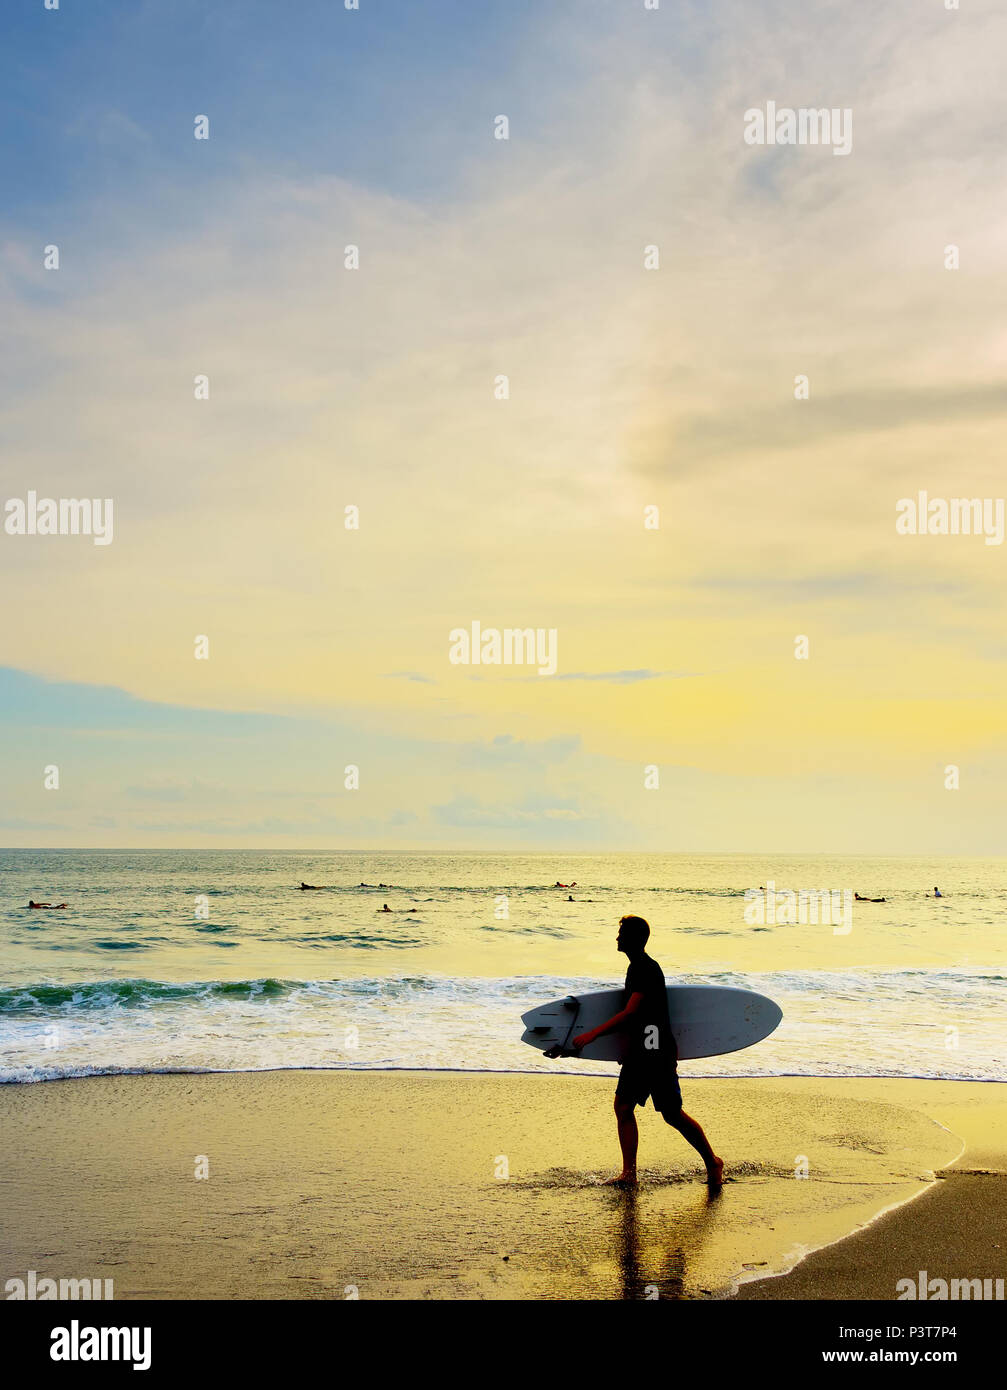 Mit dem Surfboard am Strand bei Sonnenuntergang Surfer. Die Insel Bali, Indonesien Stockfoto